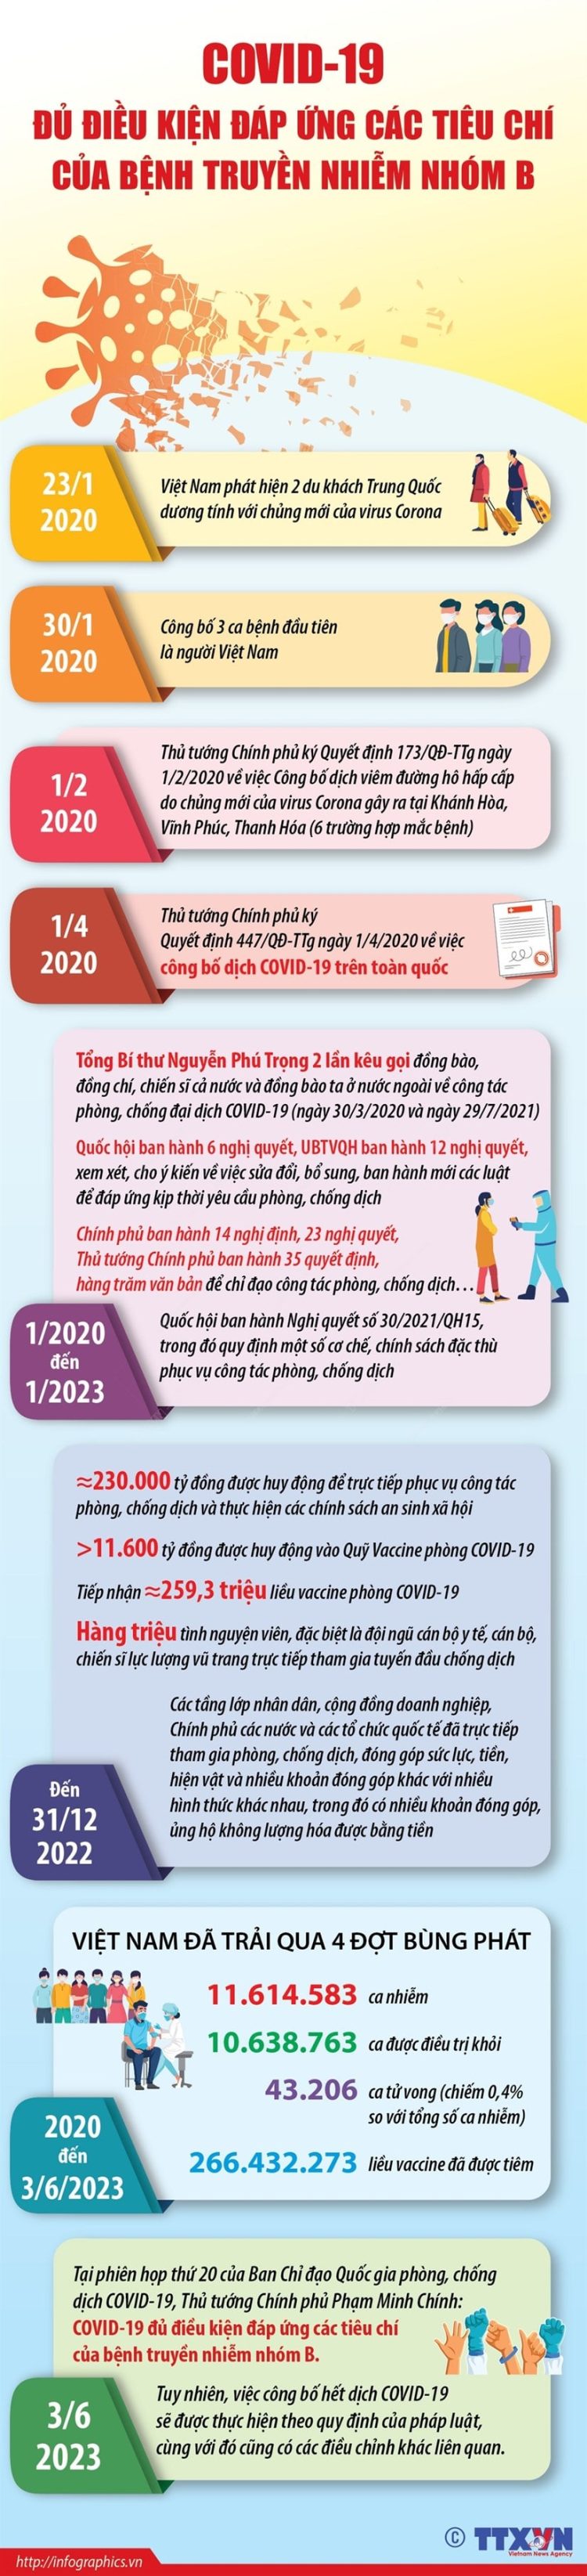 Nhung cot moc dang chu y ve dich COVID 19 tai Viet Nam min 750x3290 - [Infographics] Những cột mốc đáng chú ý về dịch COVID-19 tại Việt Nam